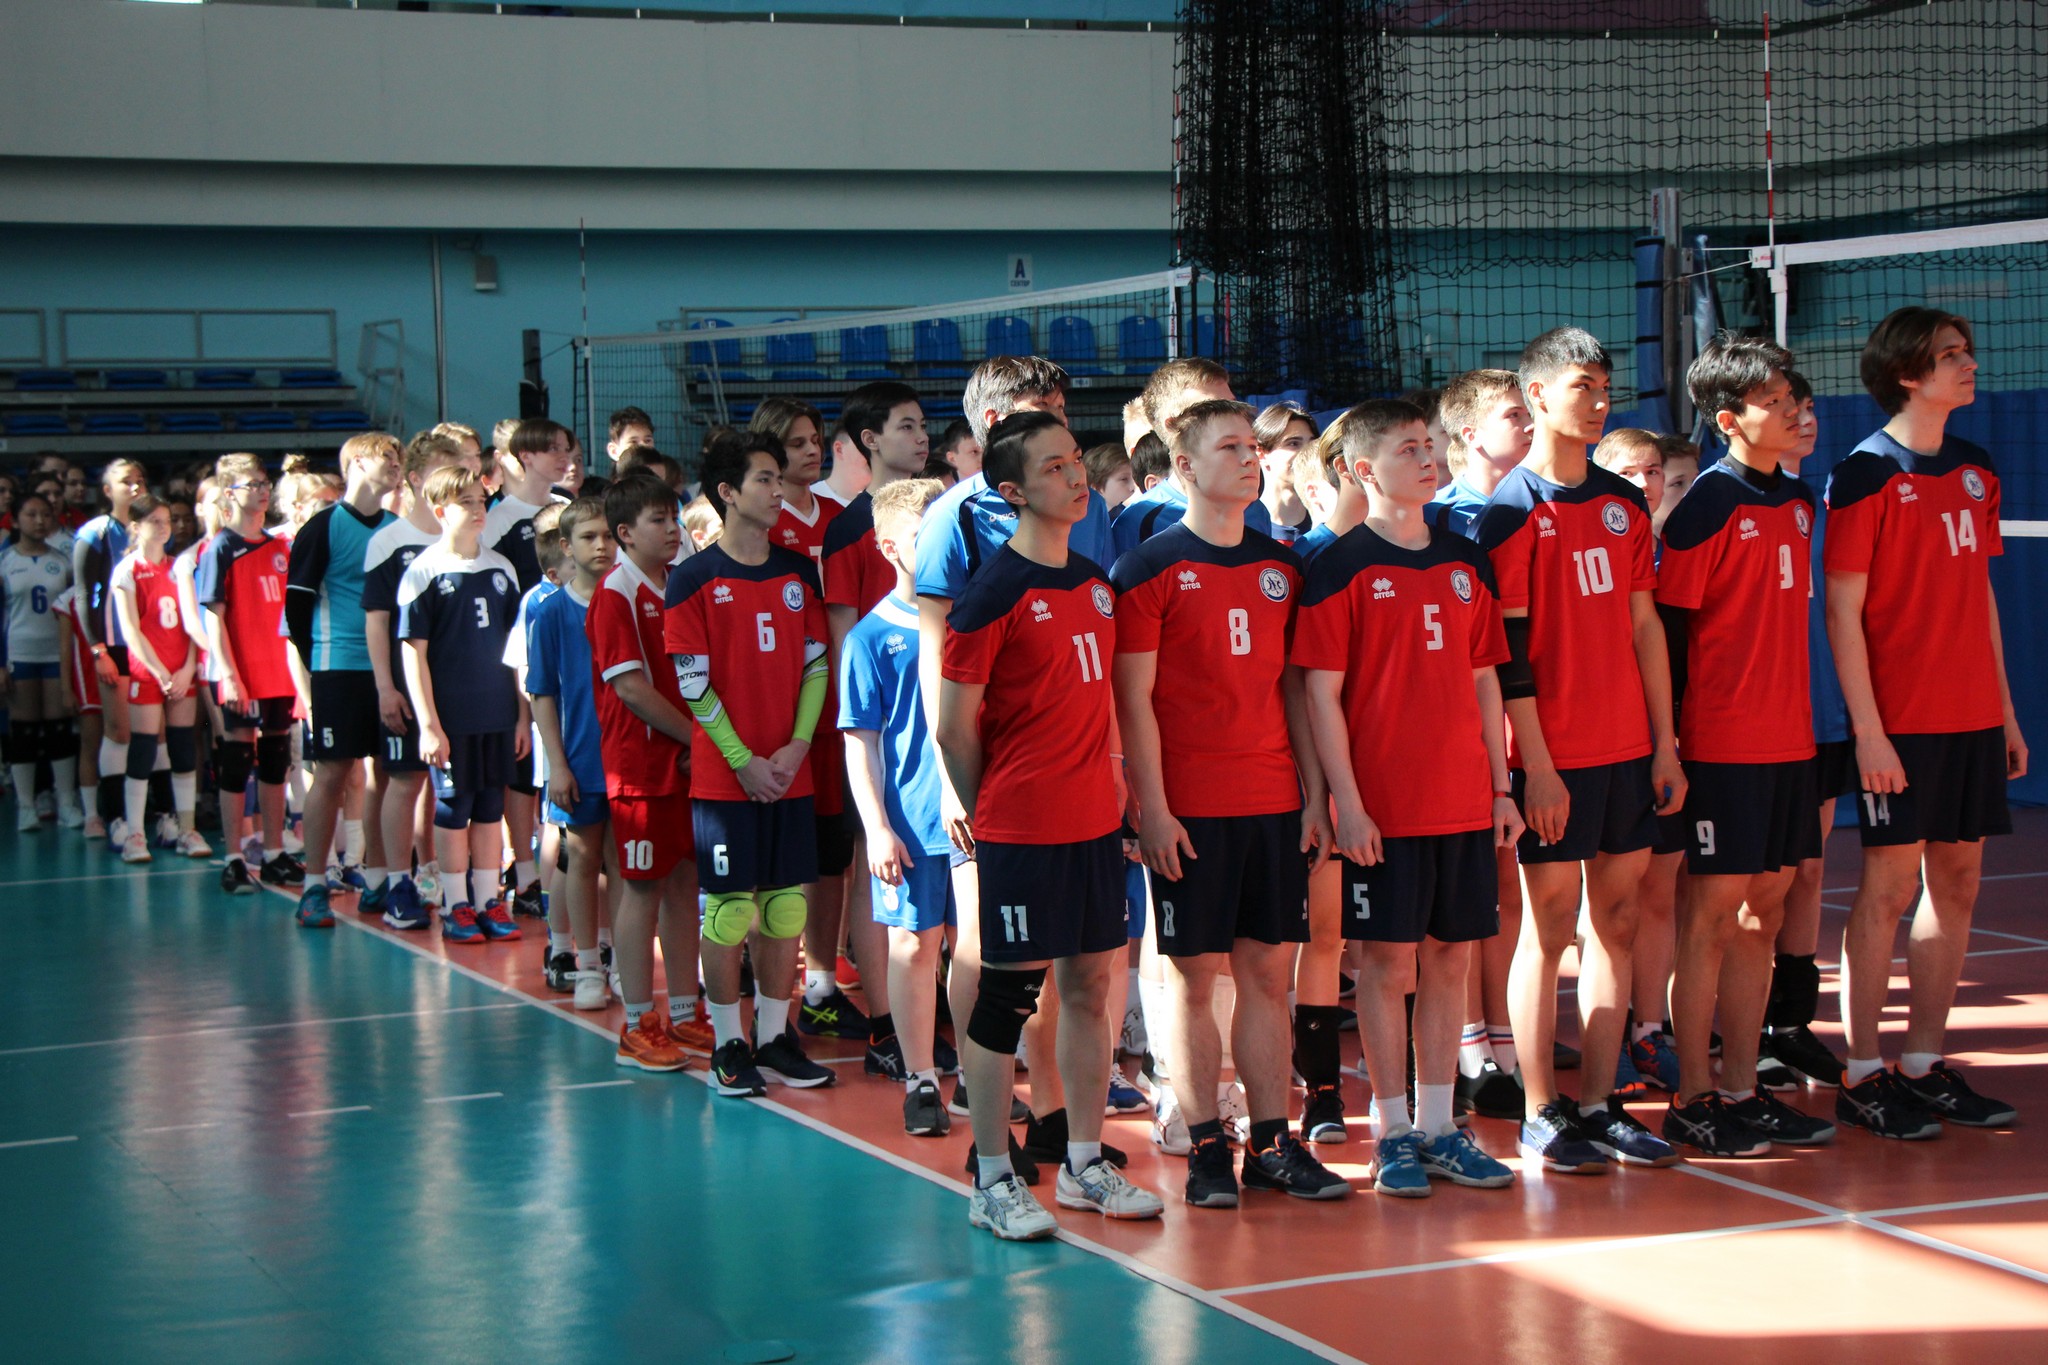 Открытое первенство области по волейболу при поддержке олимпийских чемпионов 2012 года Сергея Тетюхина и Тараса Хтей